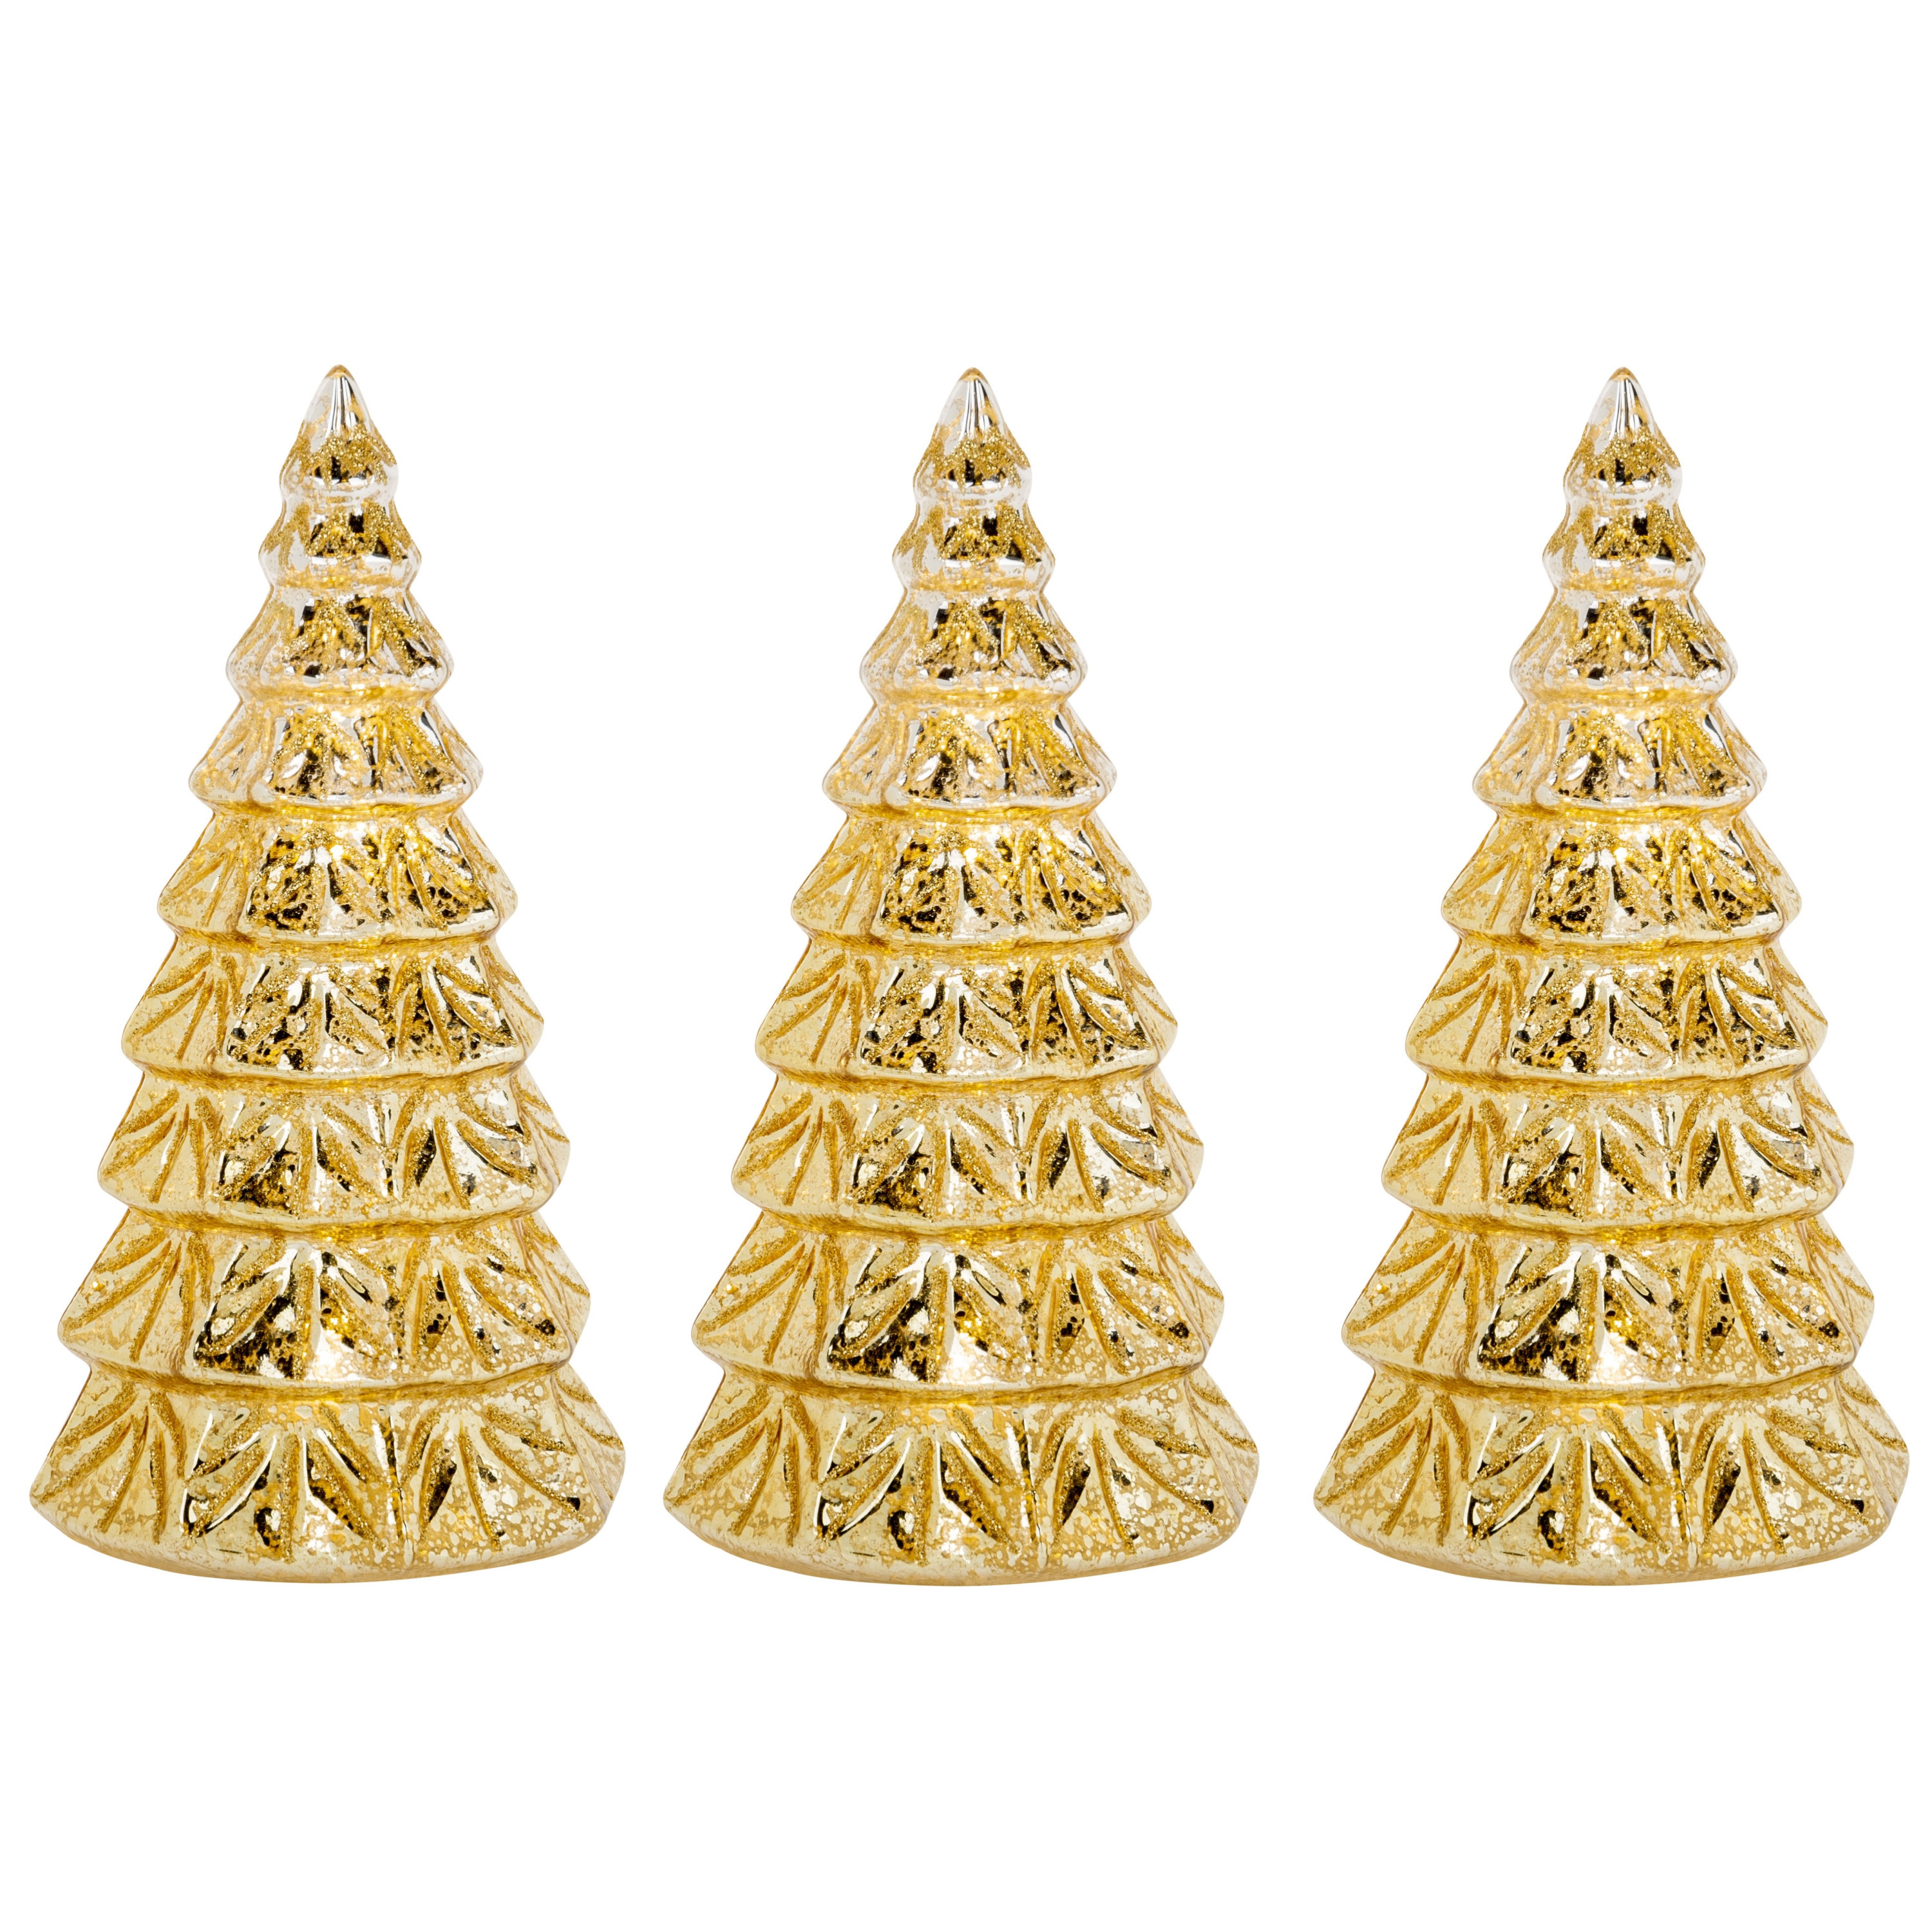 3x stuks led kaarsen kerstboom kaars goud D9 x H15 cm